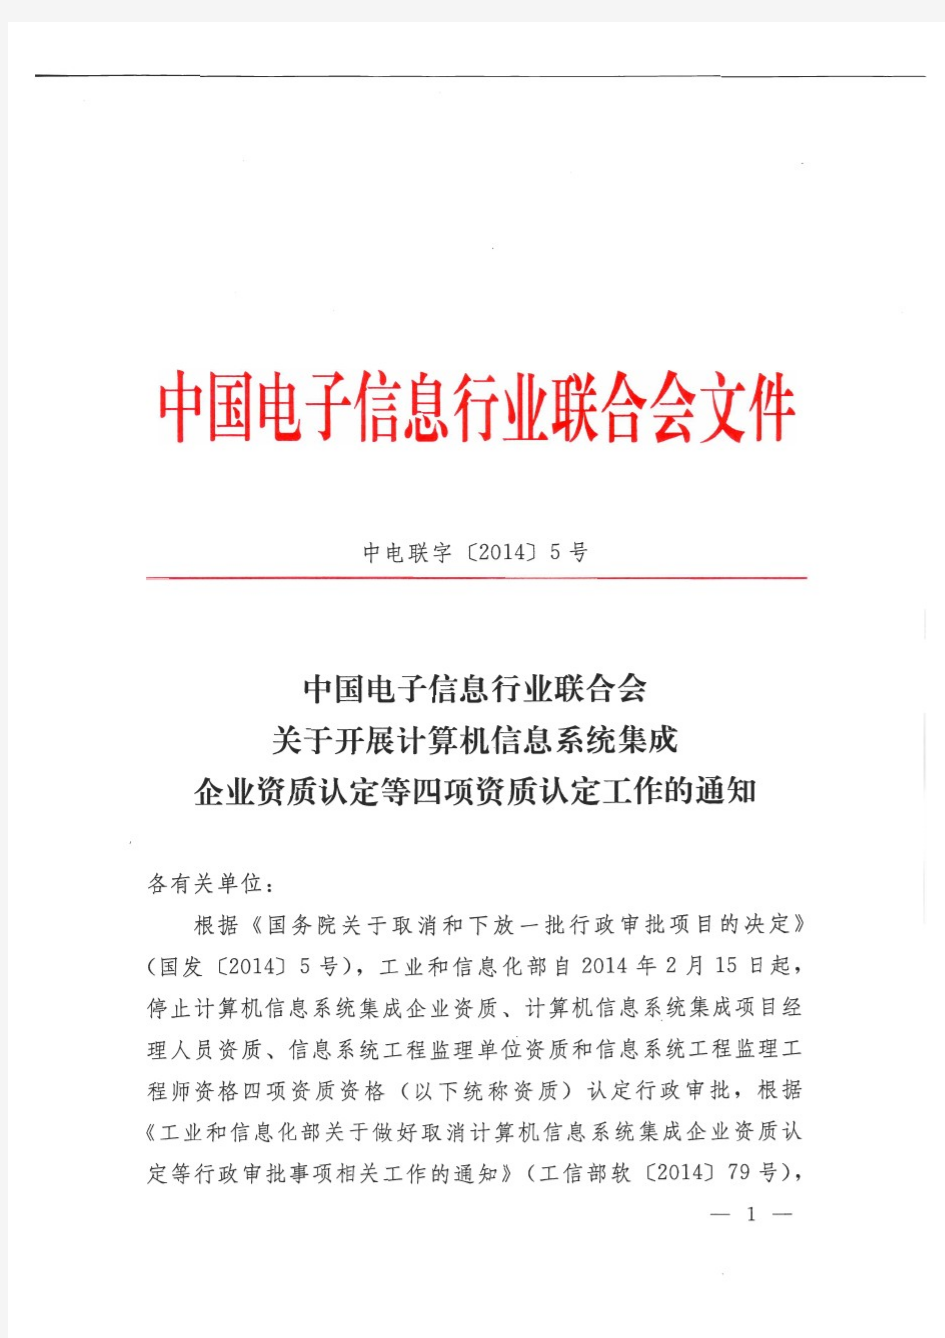 中国电子信息行业联合会计算机信息系统集成企业资质认定等四项资质认定工作的通知(中电联字[2014]5号)